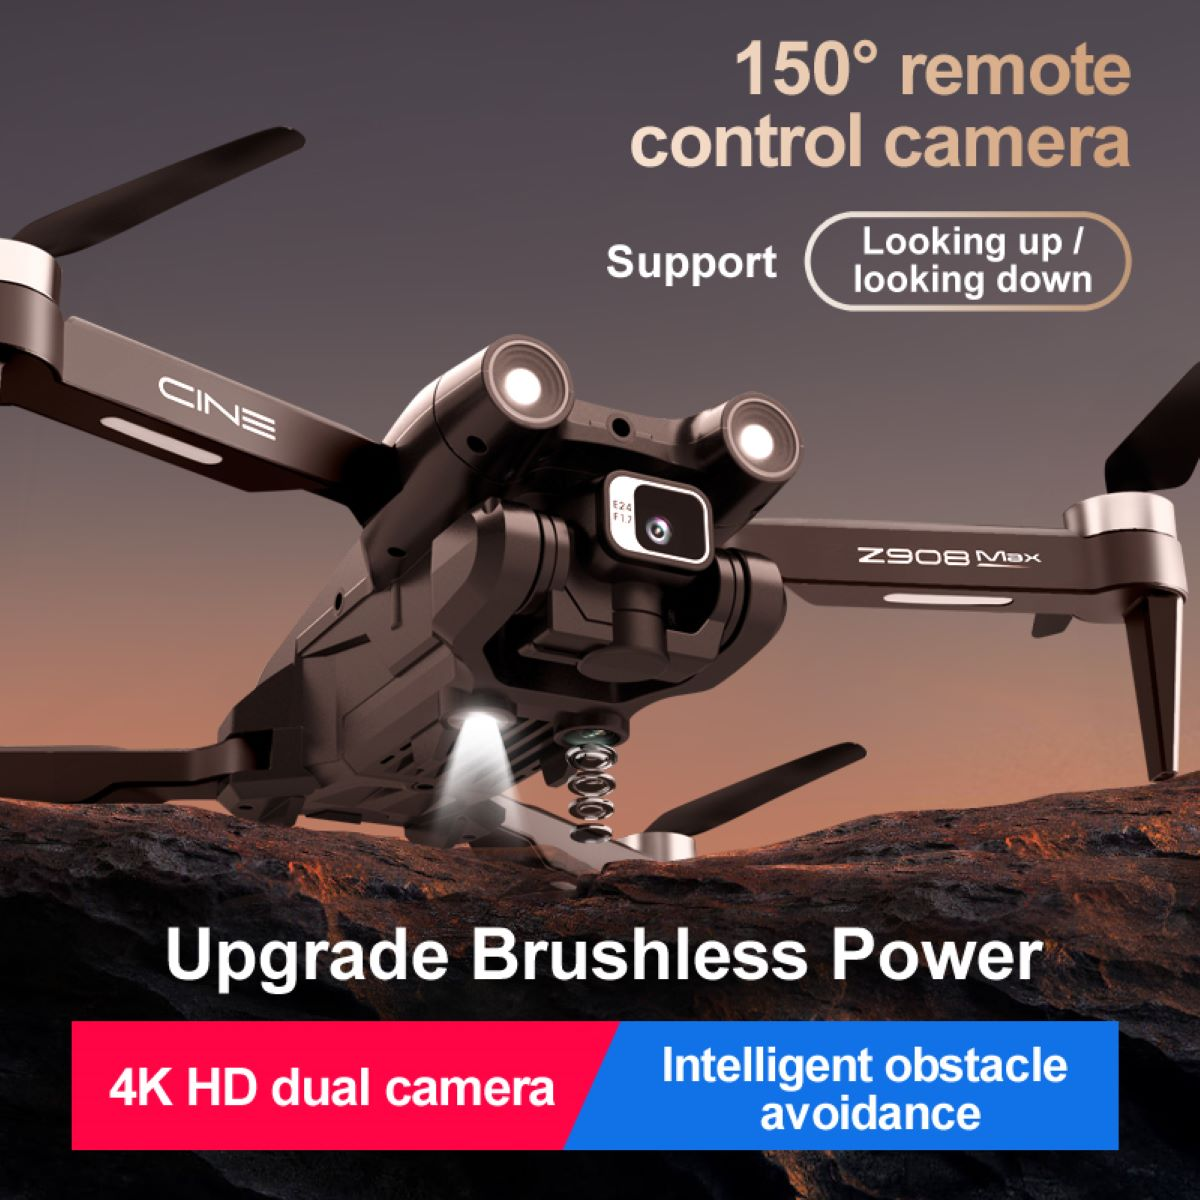 Flugzeit mit Grau QuickShots 4 Kamera Drohne, HD-Video 4K für - Mini Minuten 20 Drohne Kinder Quadrocopter BYTELIKE